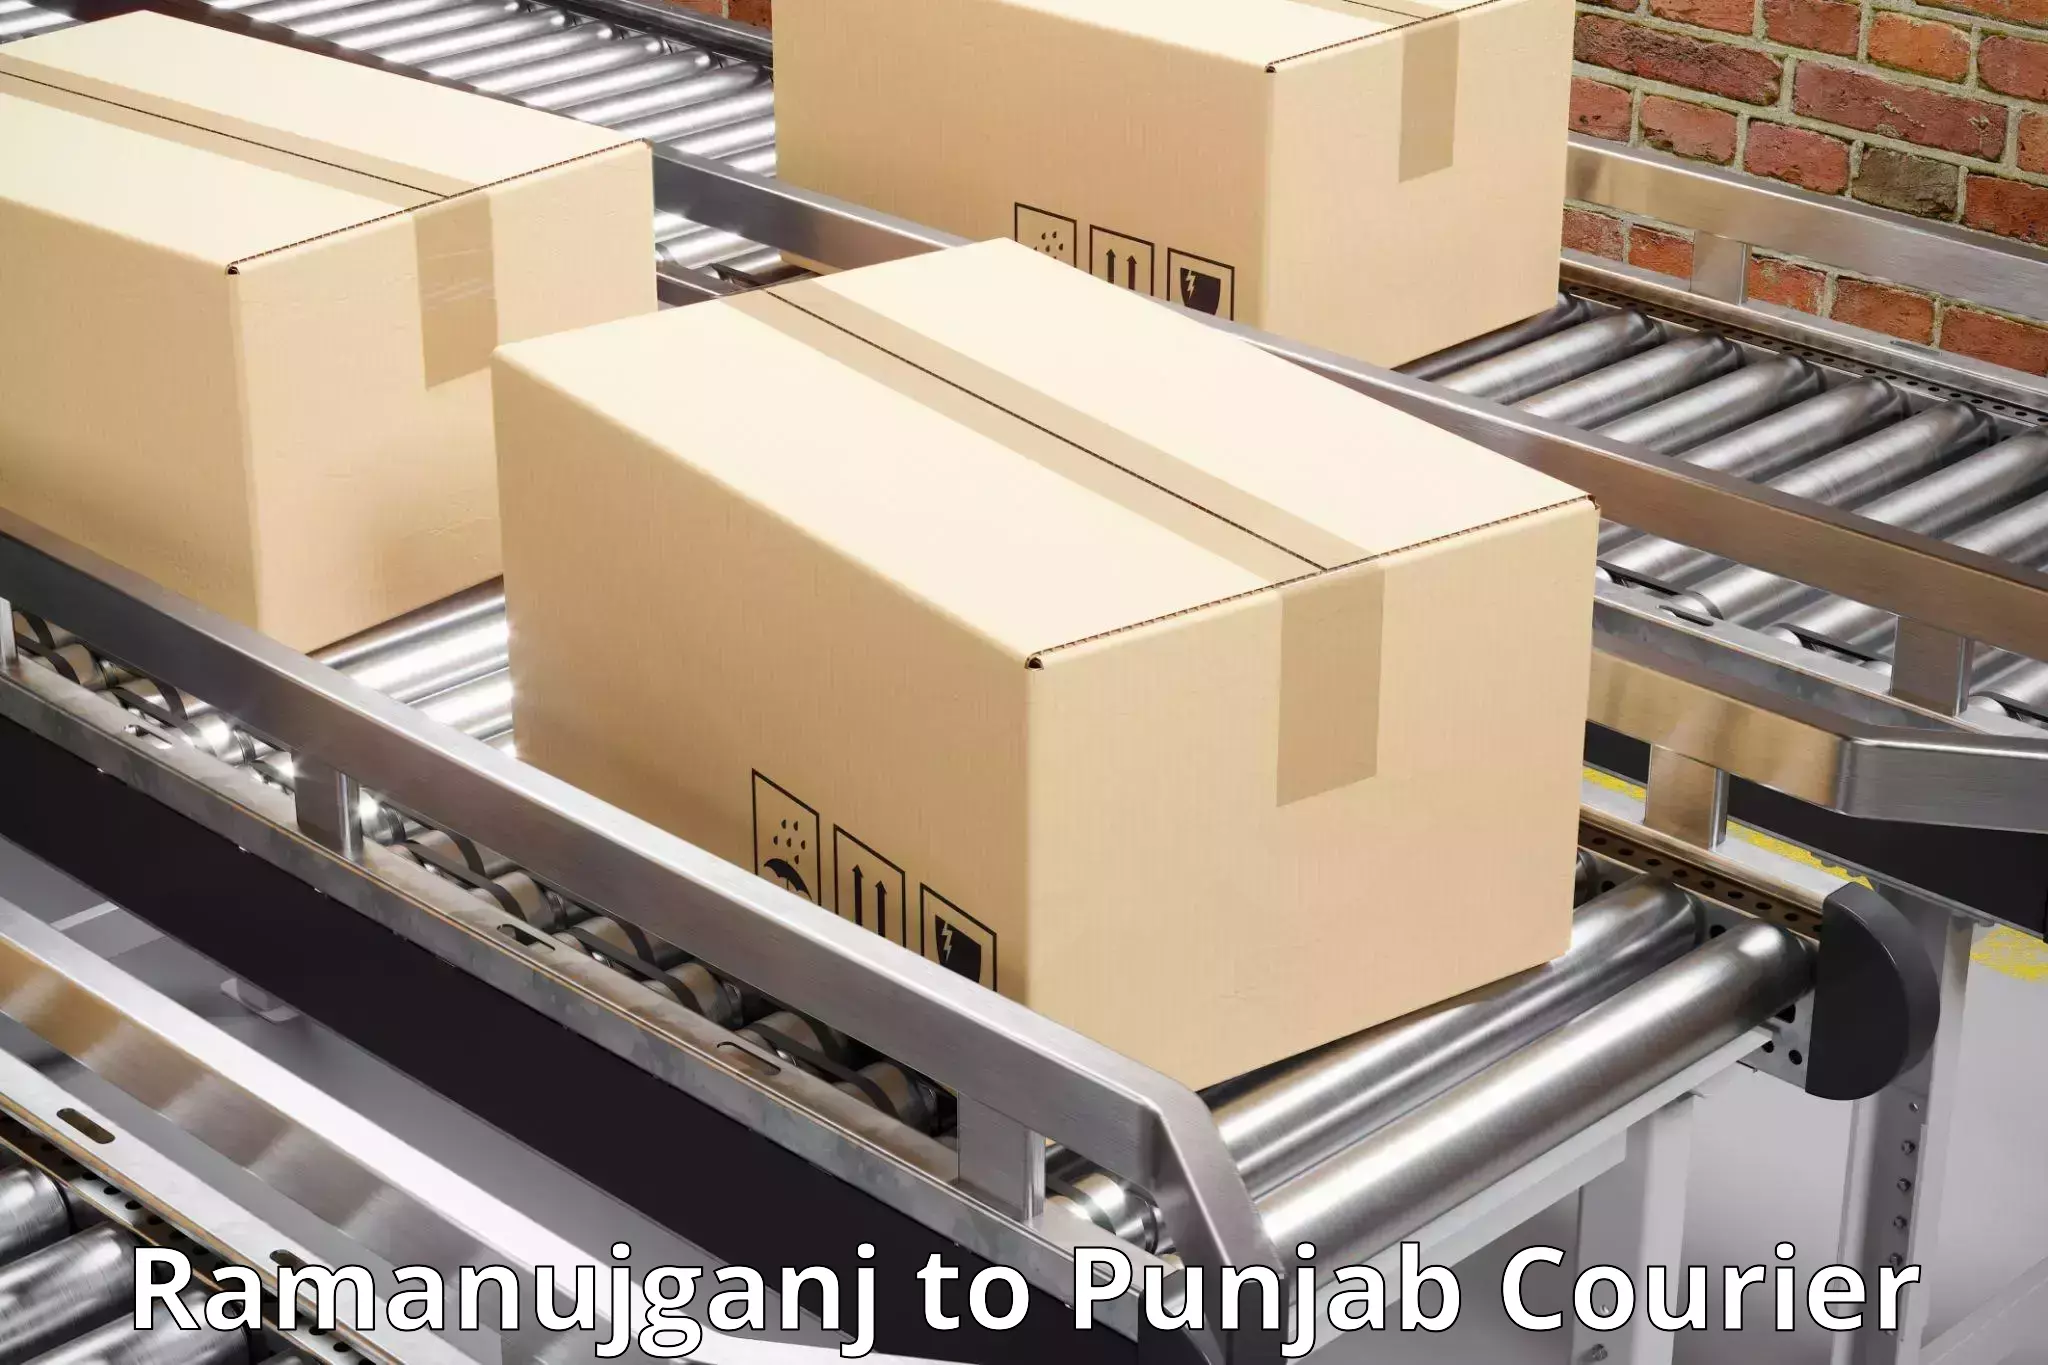 Courier services Ramanujganj to Dinanagar